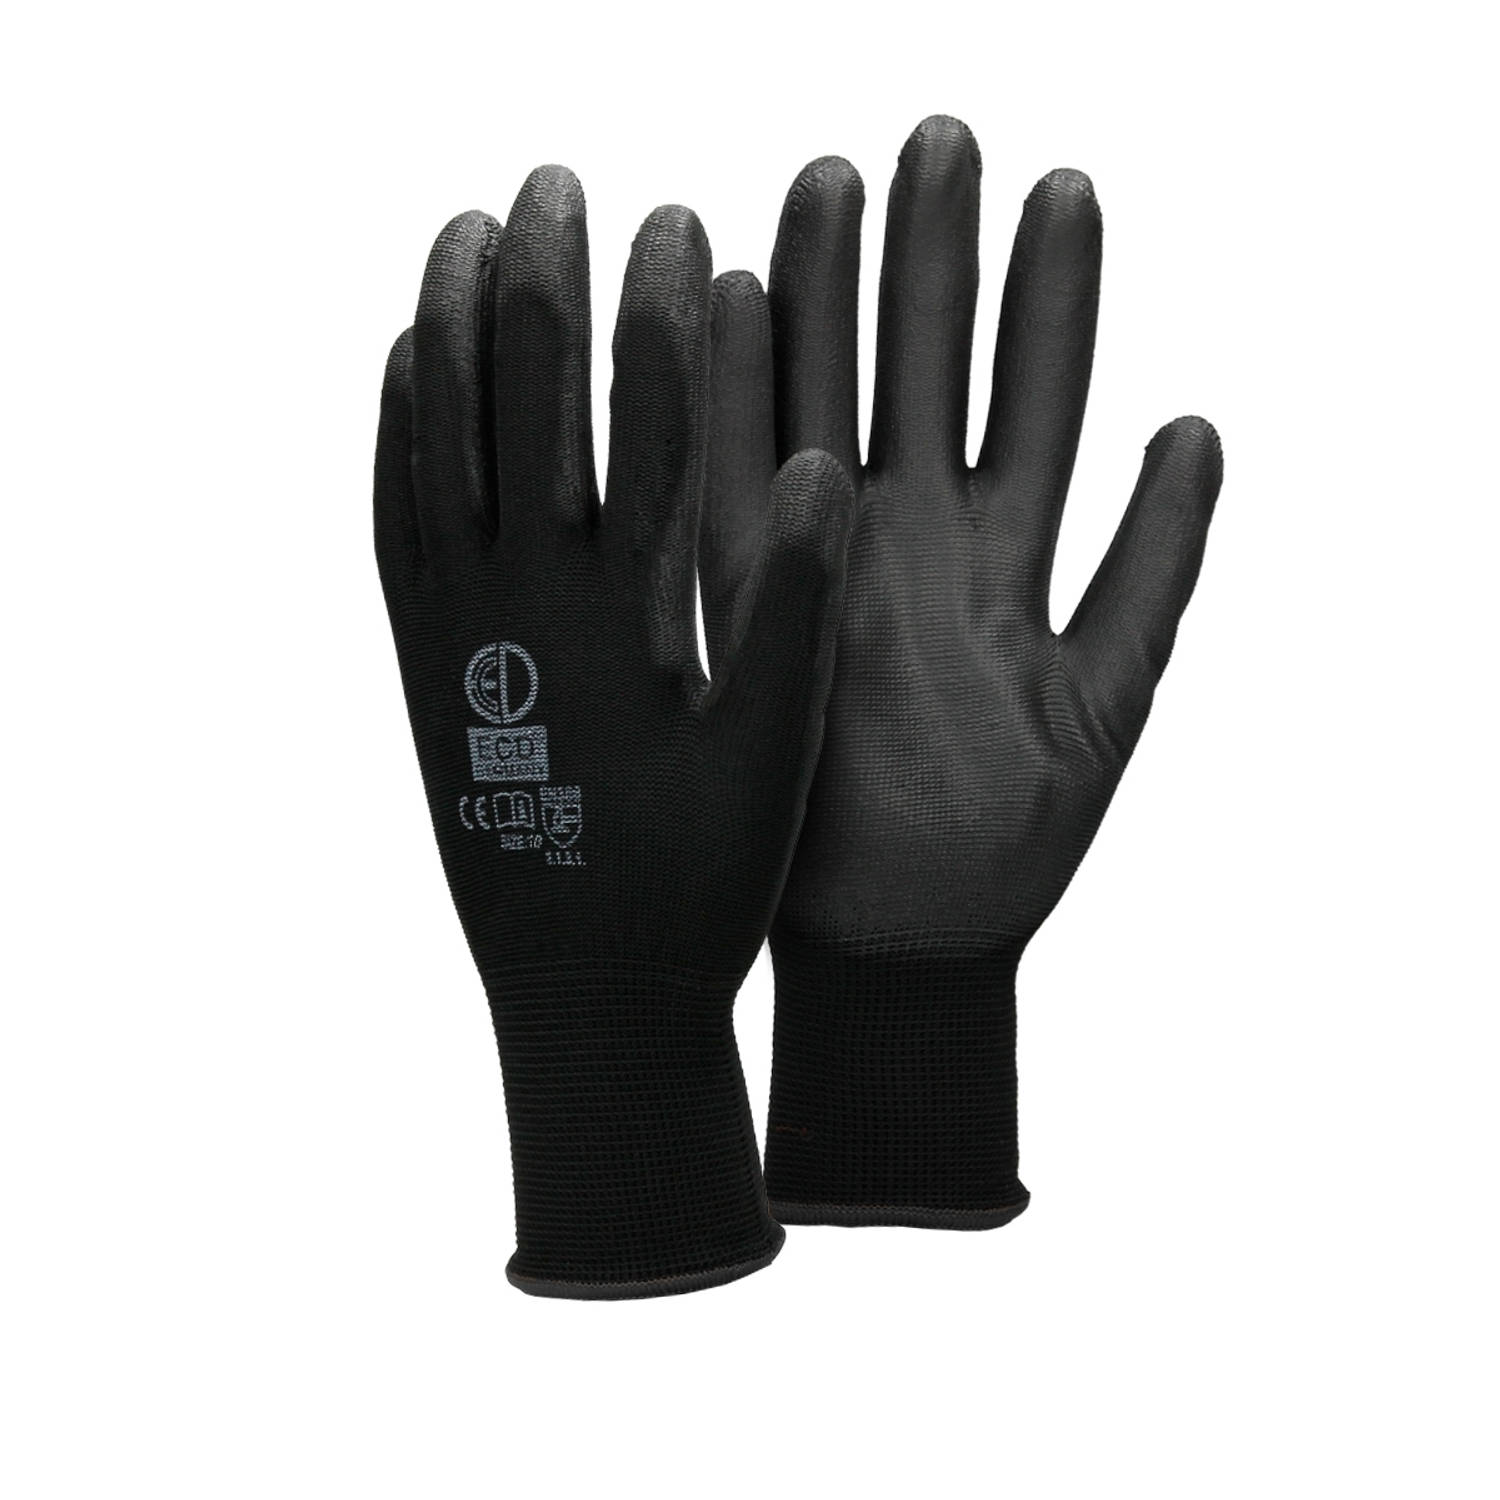 ECD Germany 144 paar werkhandschoenen met PU coating - maat 10-XL - zwart - monteurshandschoenen montagehandschoenen beschermende handschoenen tuinhandschoenen - diverse kleuren &